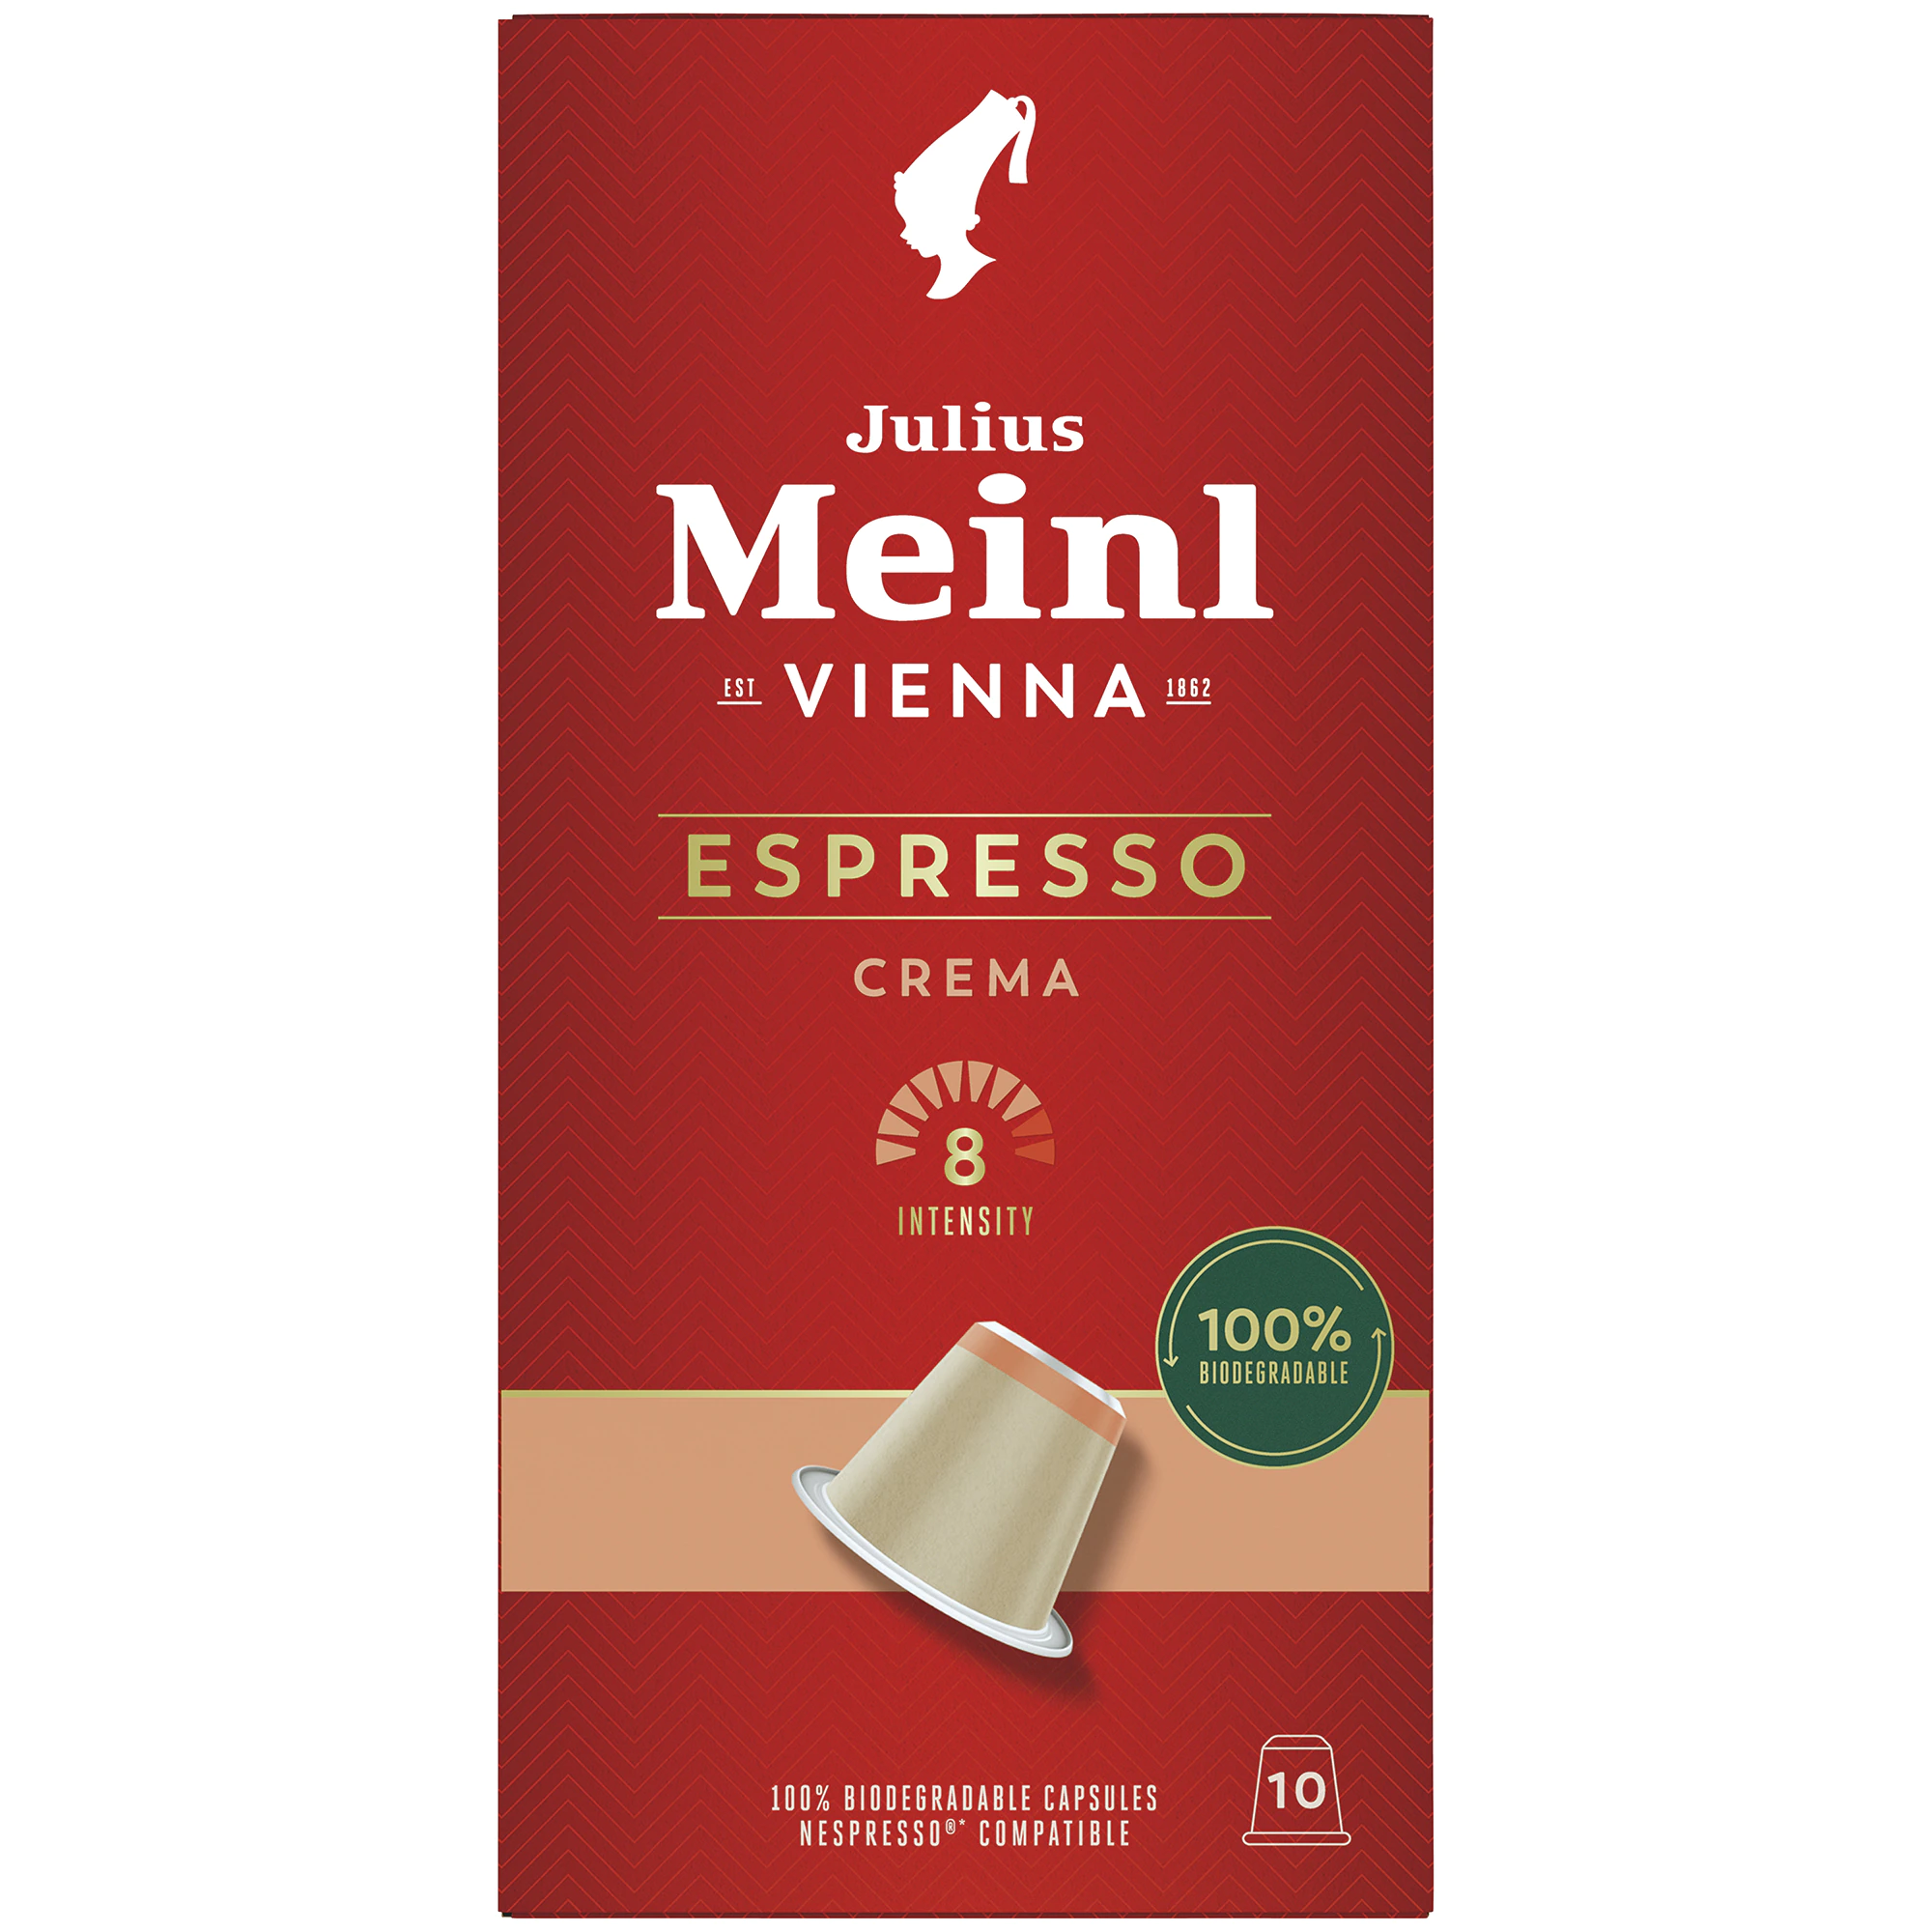 julius meinl espresso crema 10 capsule nespresso kfea 315663d11514bdb3a Cafea Julius Meinl Distribuitori